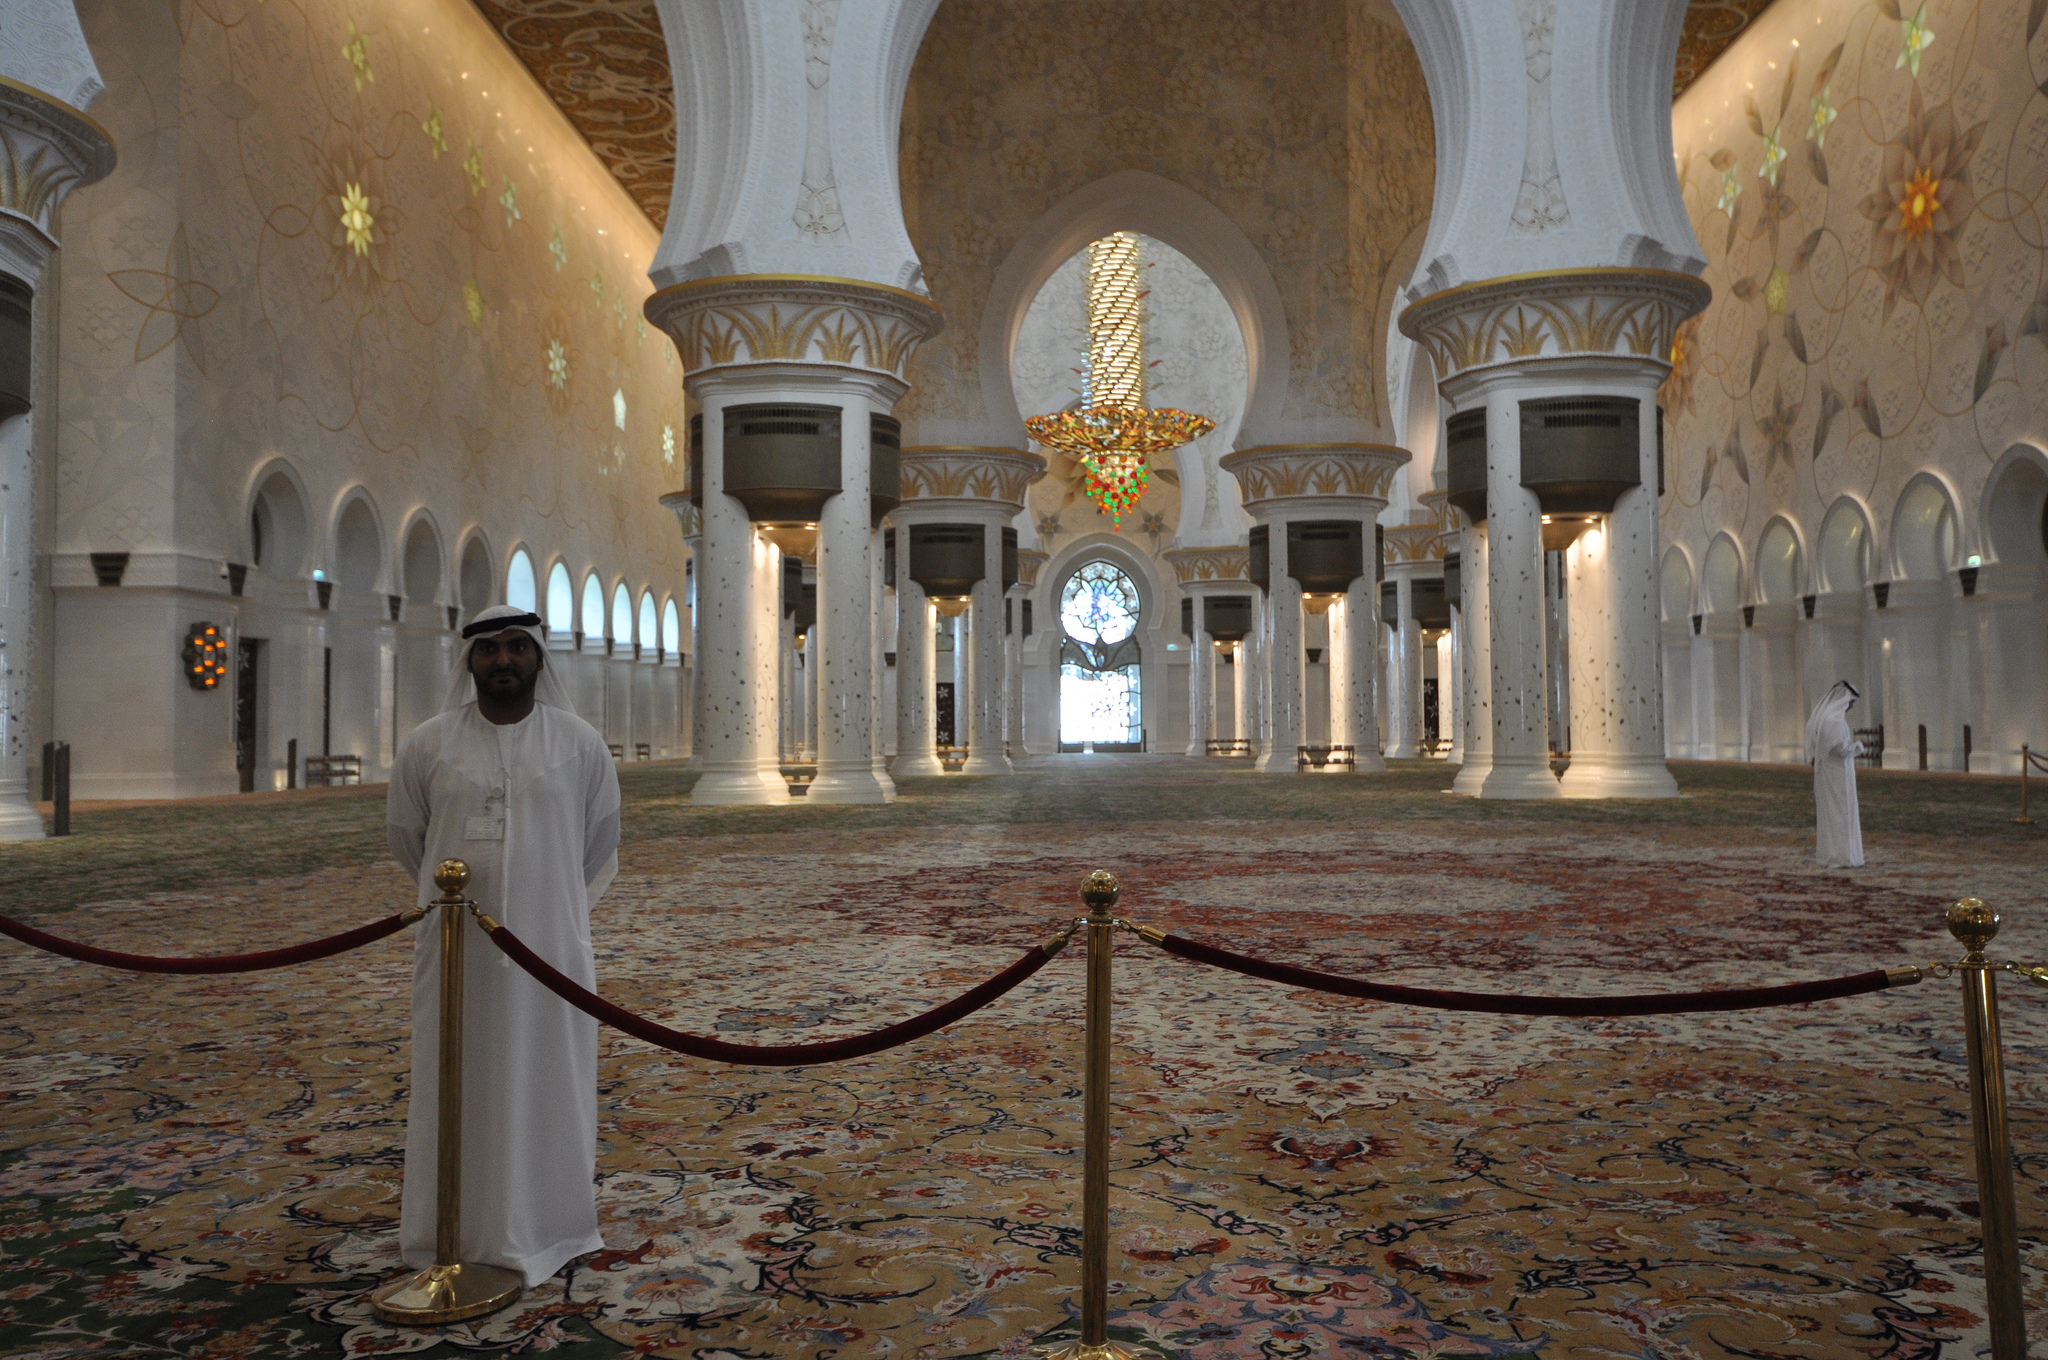 Ντουμπάι: Αιφνιδιαστική επίσκεψη του σεΐχη στο δημόσιο-Τι είδε και δεν το πίστευε